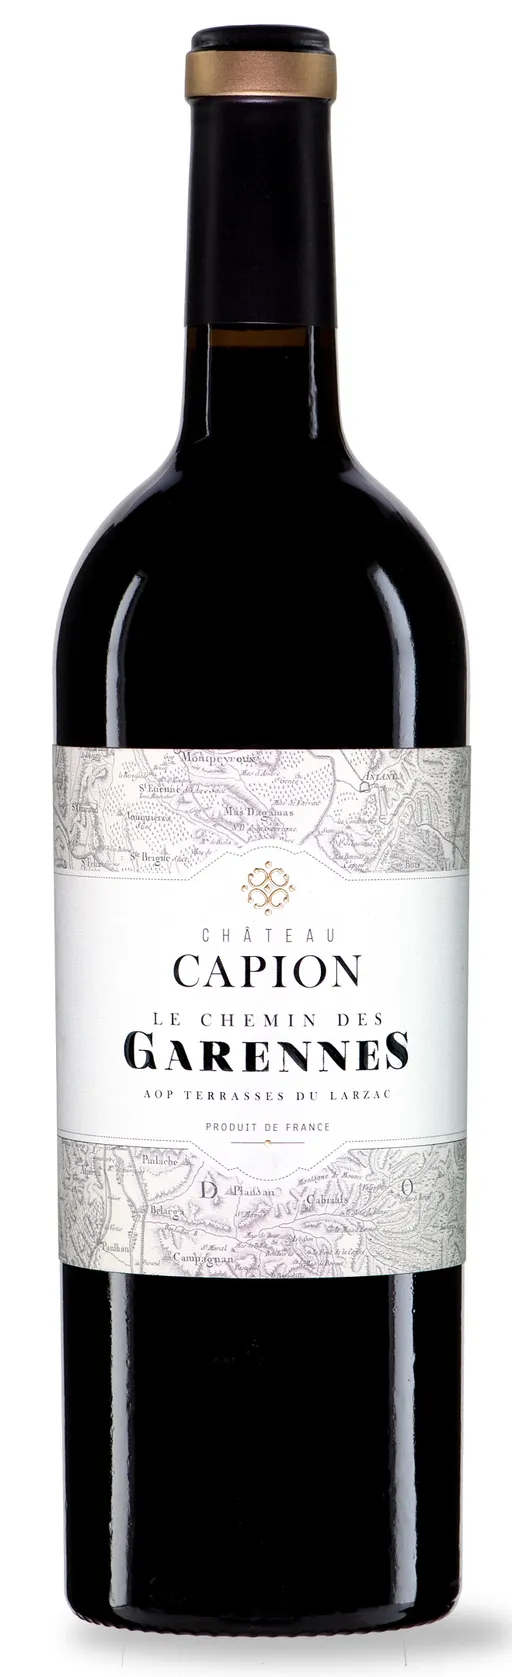 Château Capion Le Chemin des Garennes, Tinto, 2017, Terrasses du Larzac. Bottle image